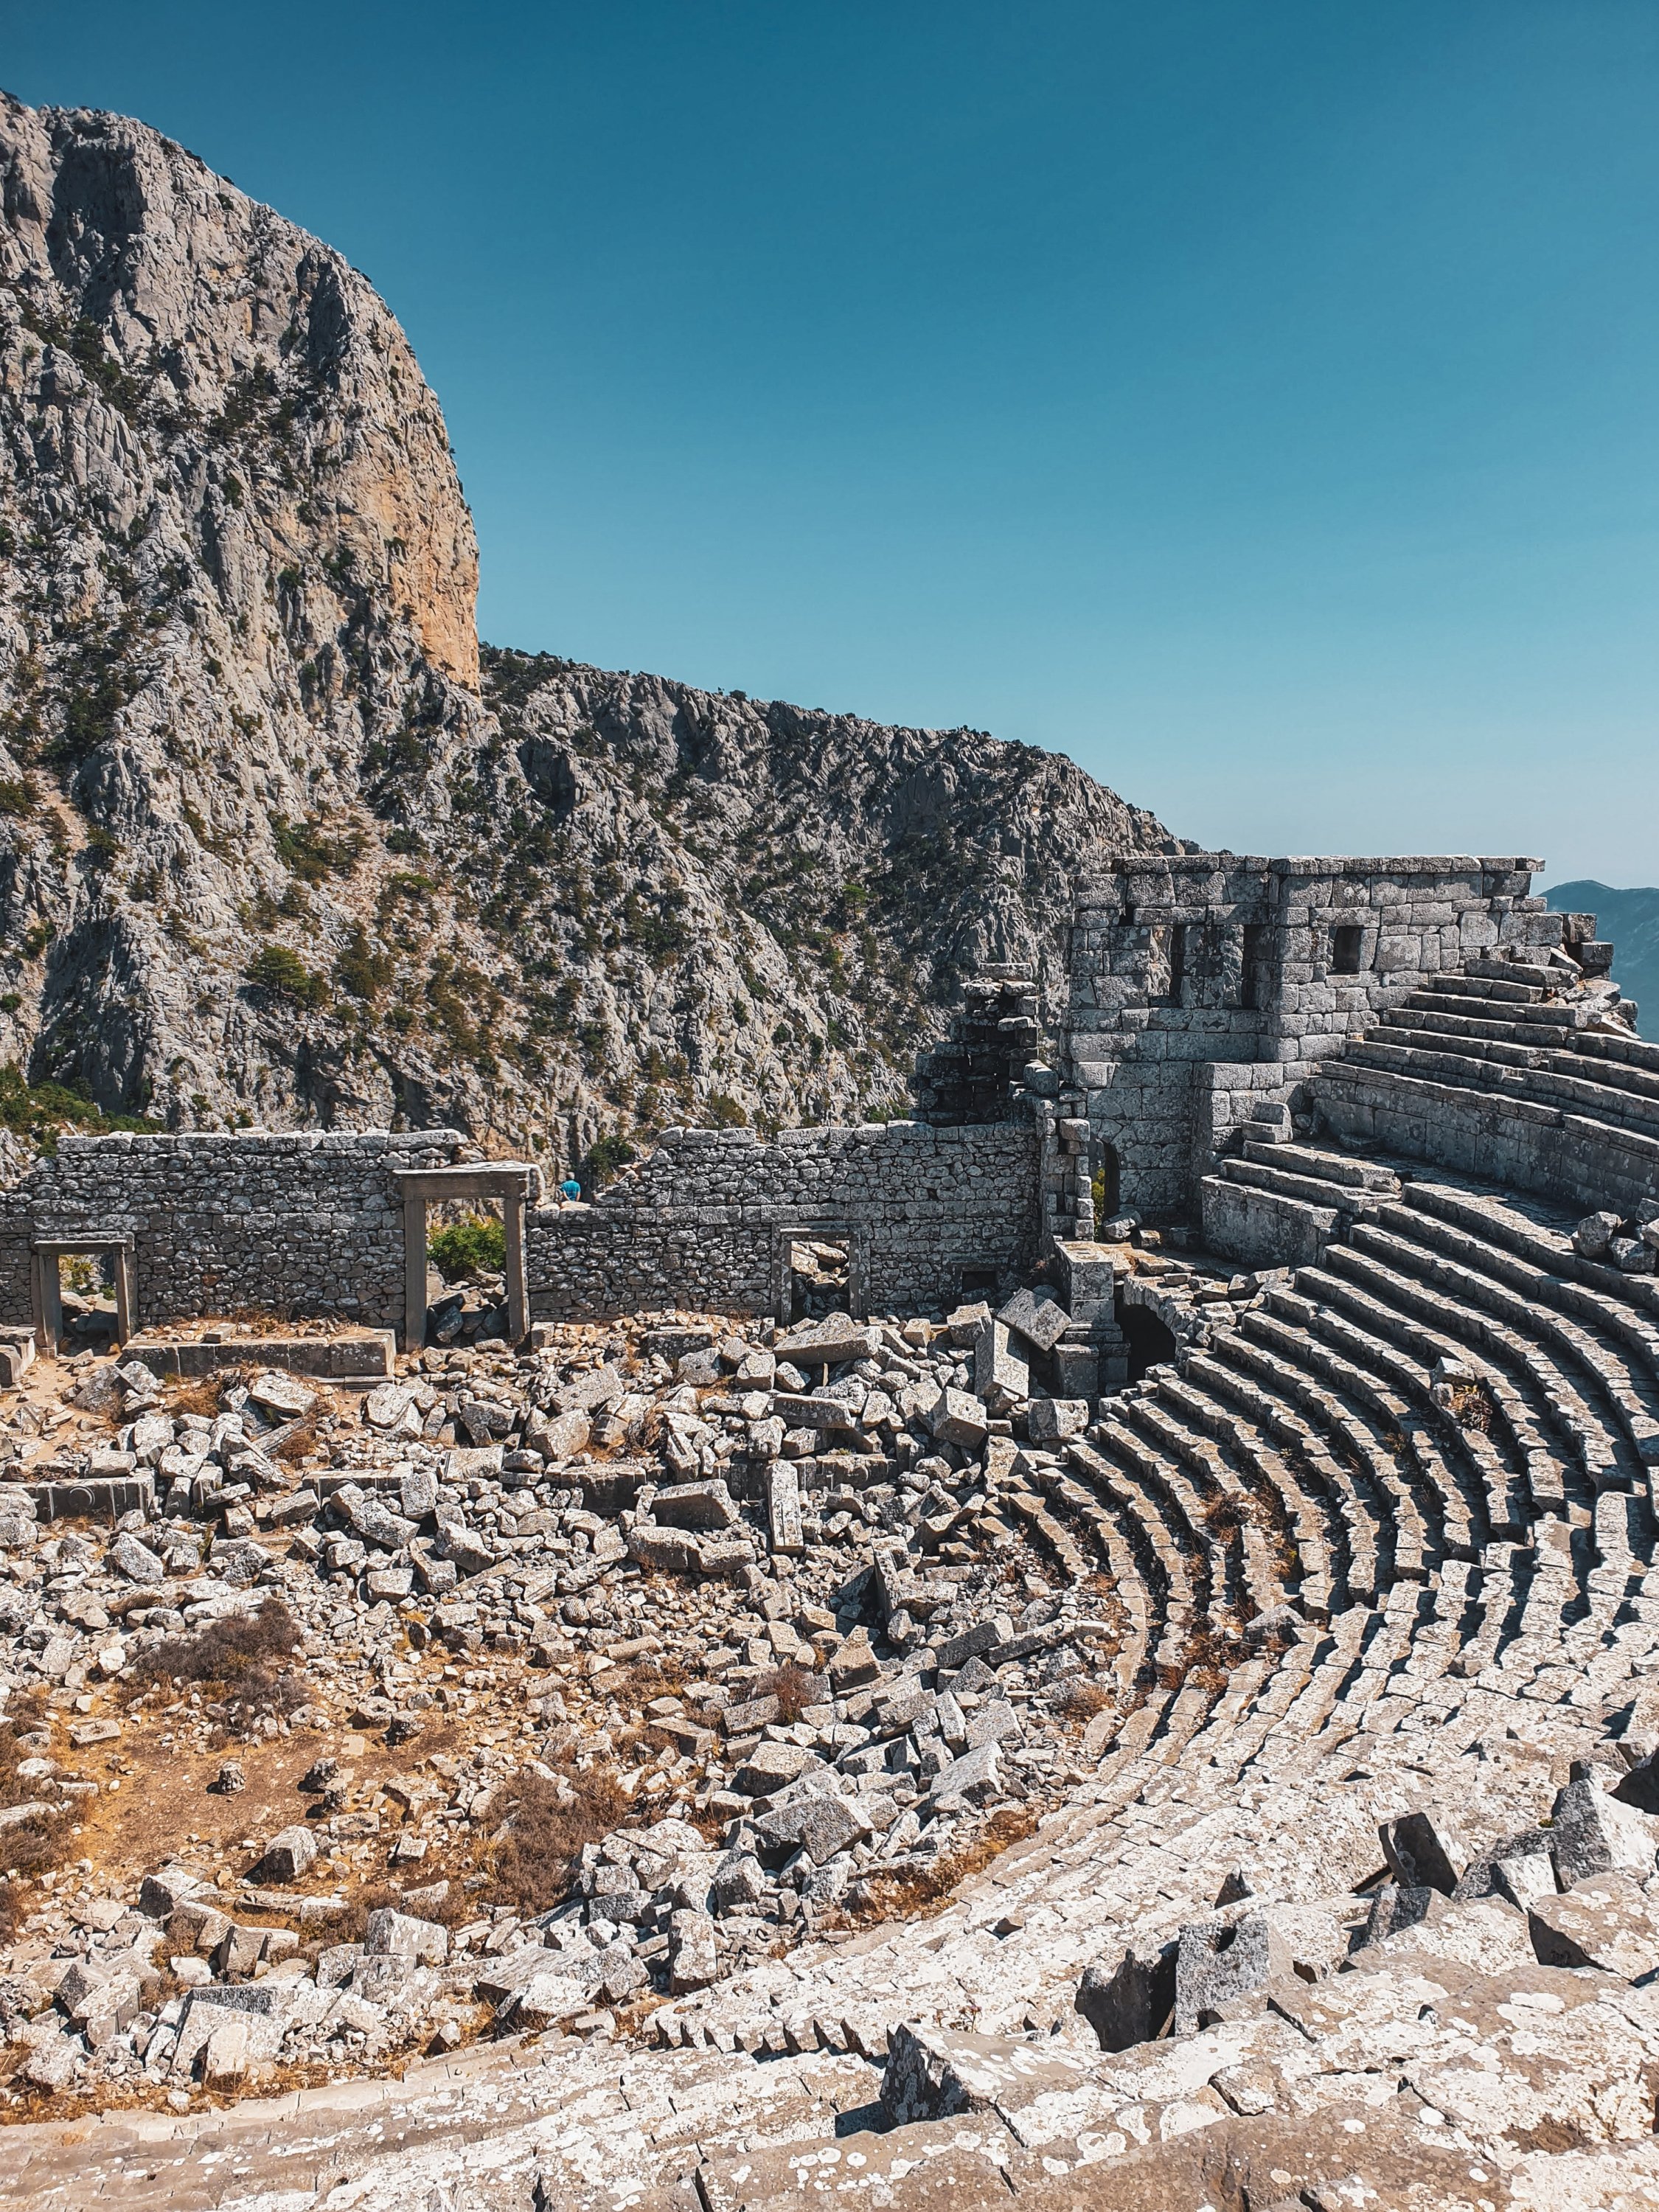 4.500 kişi kapasiteli antik tiyatro, Termessos'un en dikkat çekici cazibe merkezidir.  (Fotoğraf: Argun Konuk)